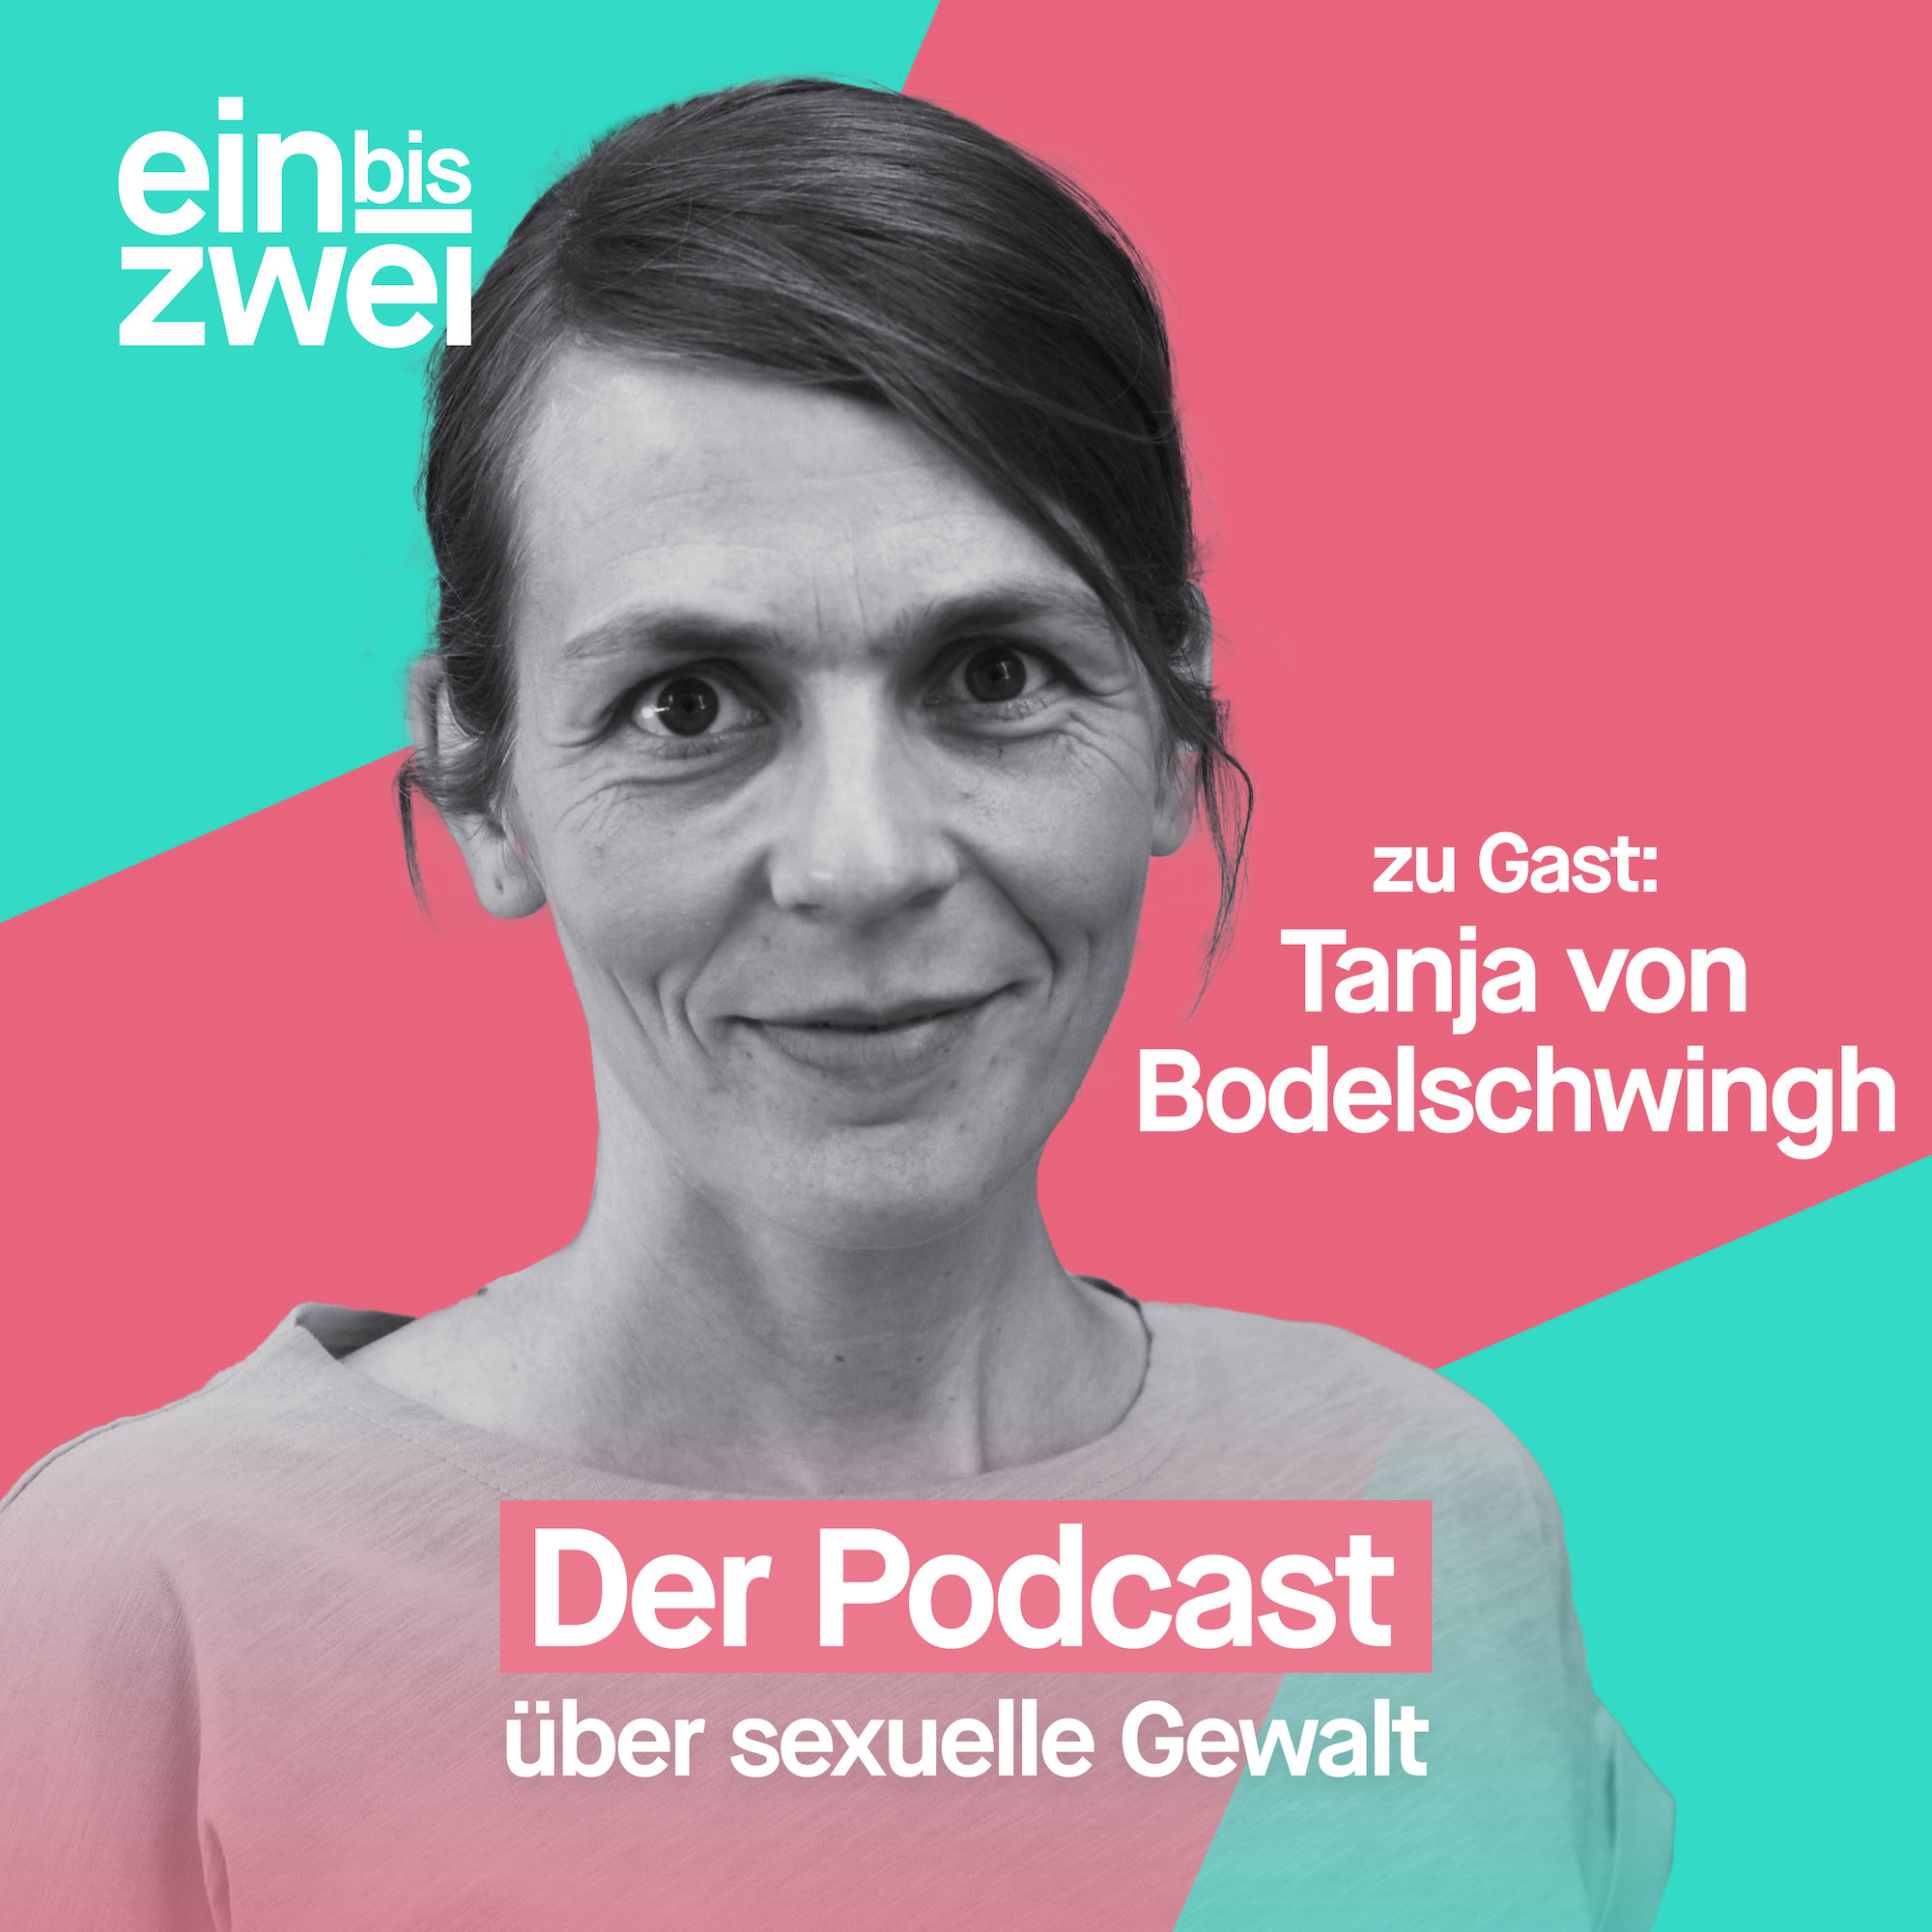 Tanja von Bodelschwingh